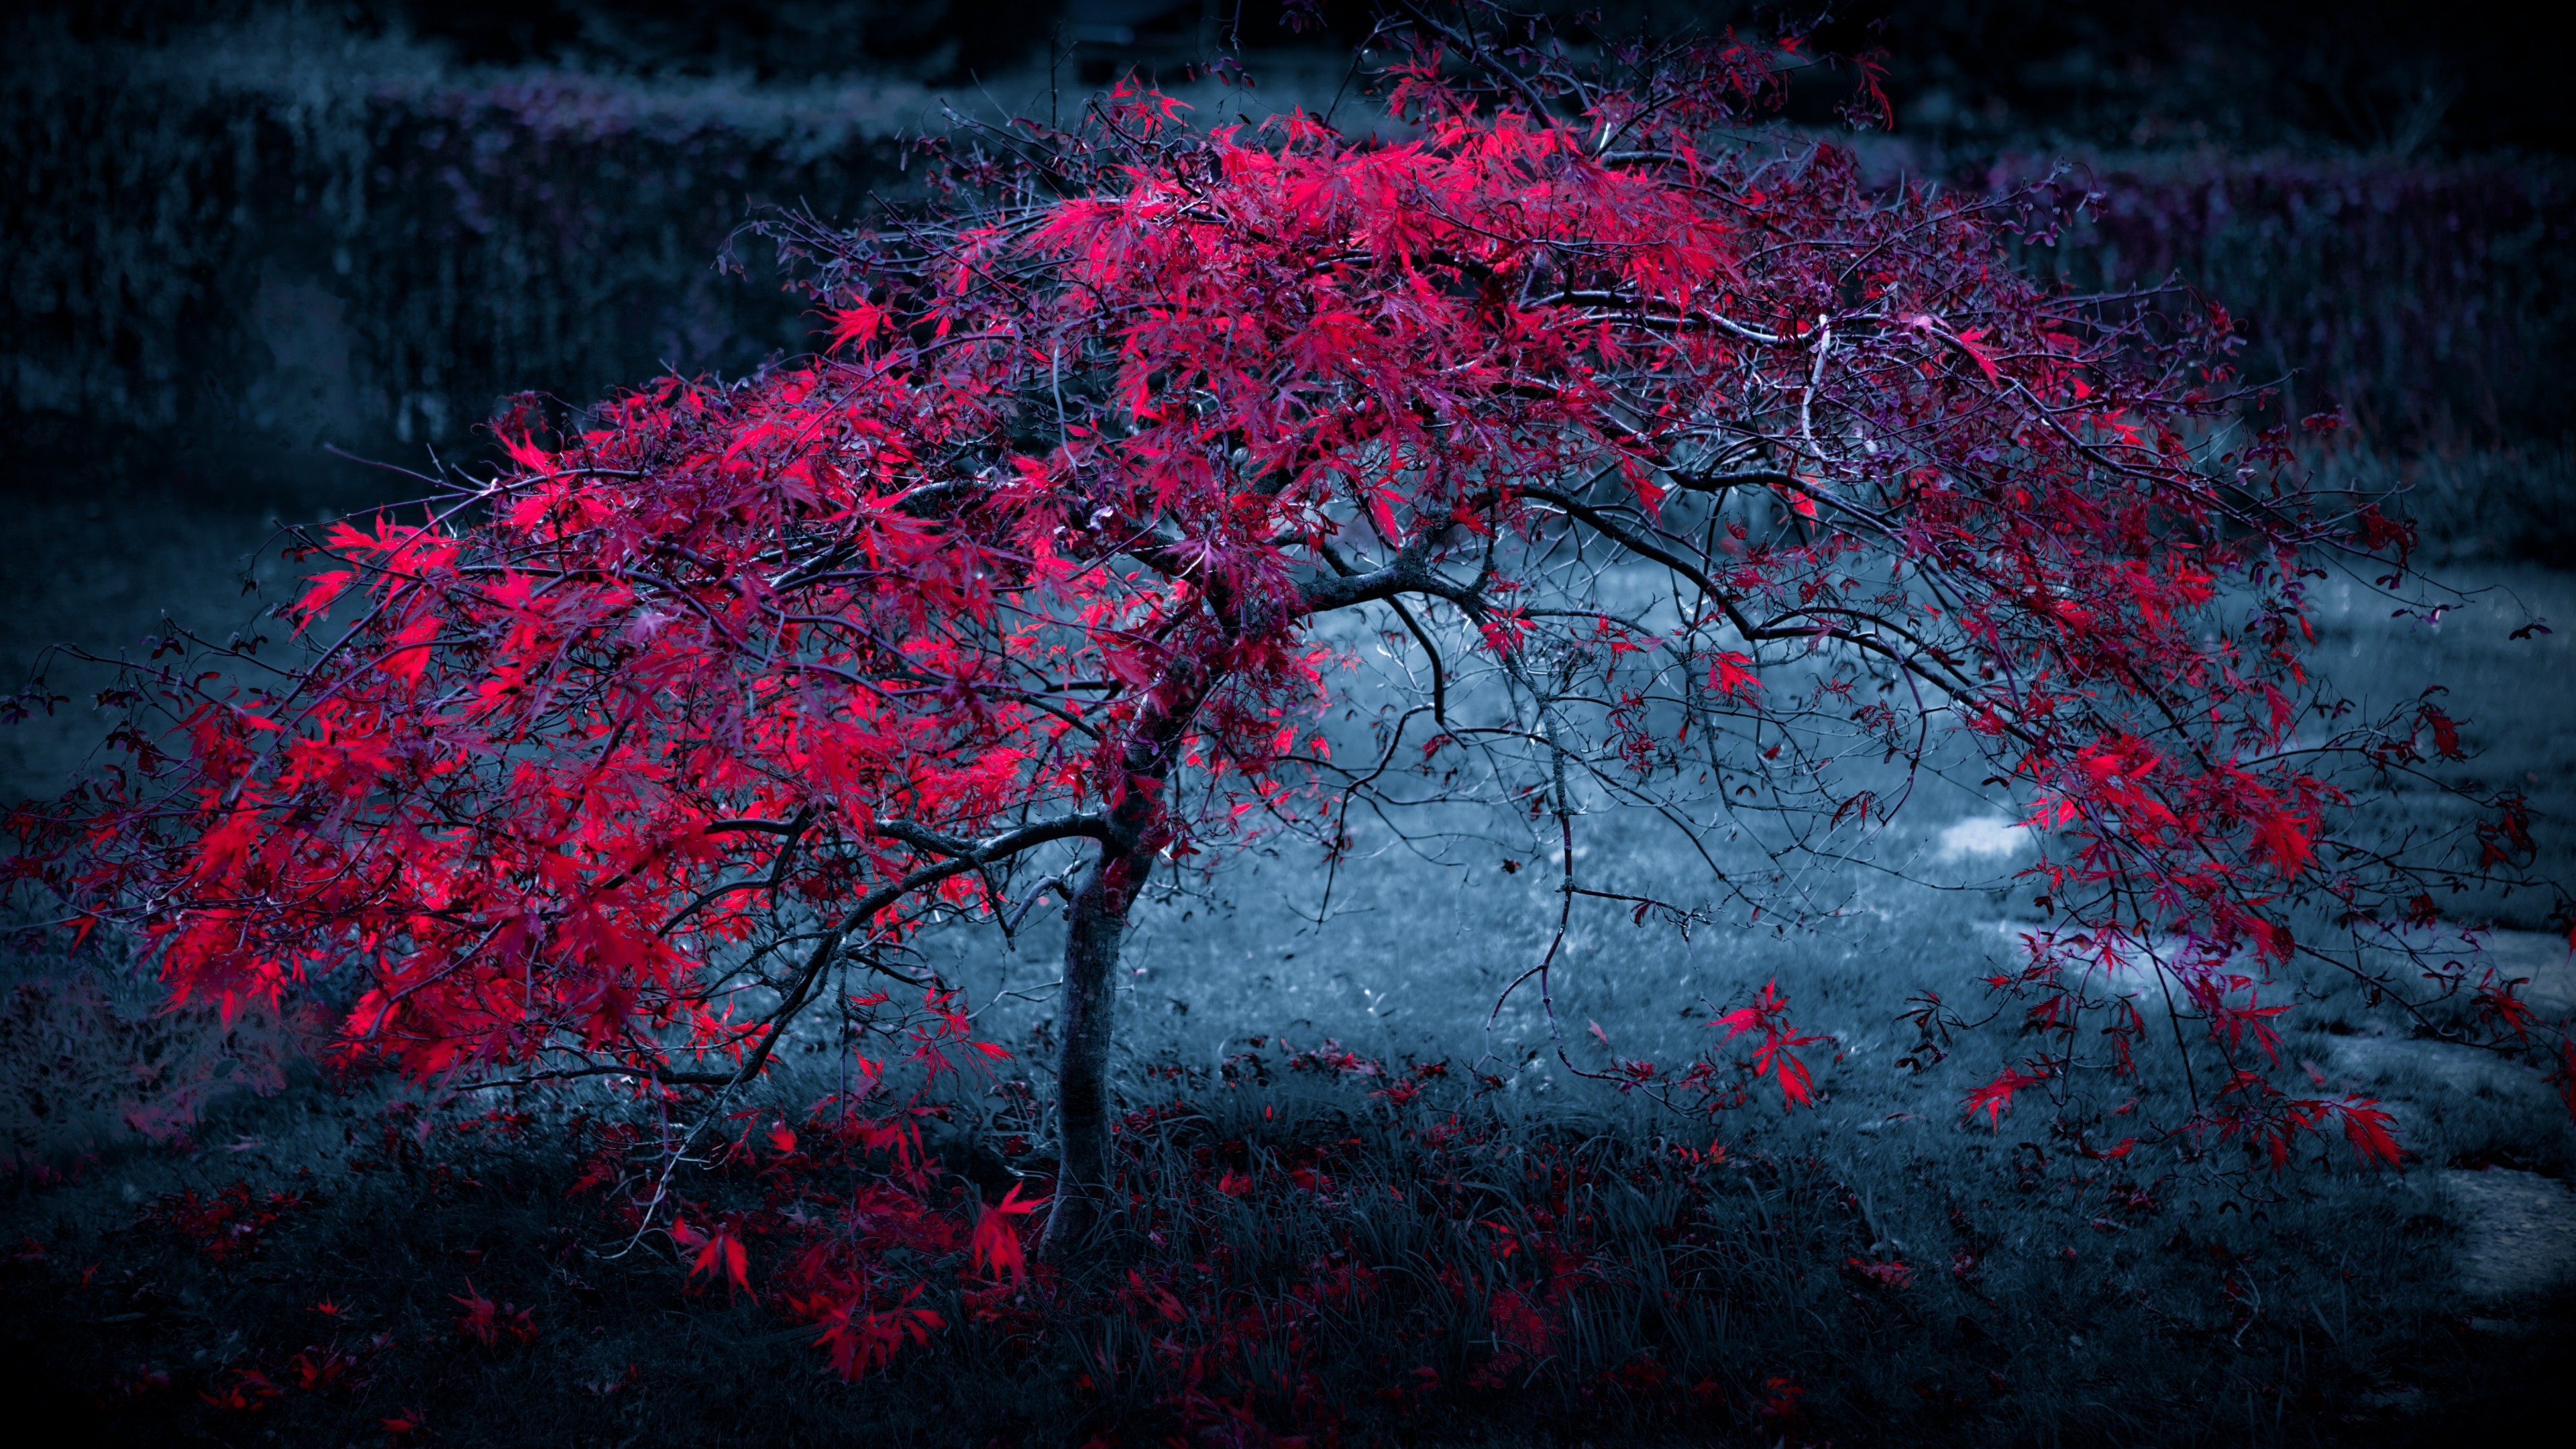 Cây lá đỏ rực là một trong những điểm nhấn nổi bật nhất của mùa thu. Hình ảnh của chúng sẽ càng làm cho bạn say mê hơn khi bạn tìm hiểu về những loài cây này và cách chúng thay đổi qua mùa.